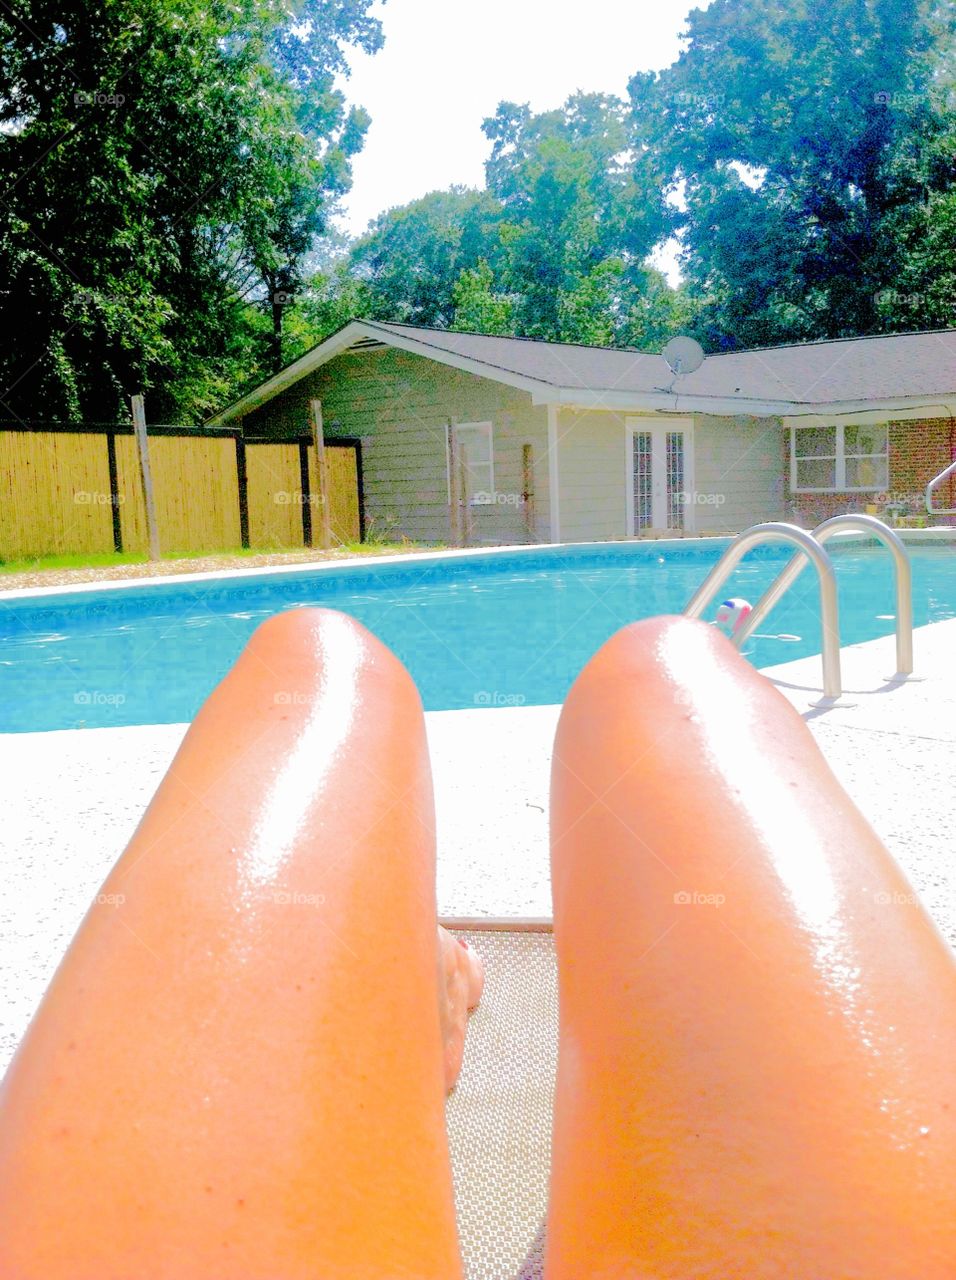 Pool time . Sunbathing by the pool legs look like two hotdogs 